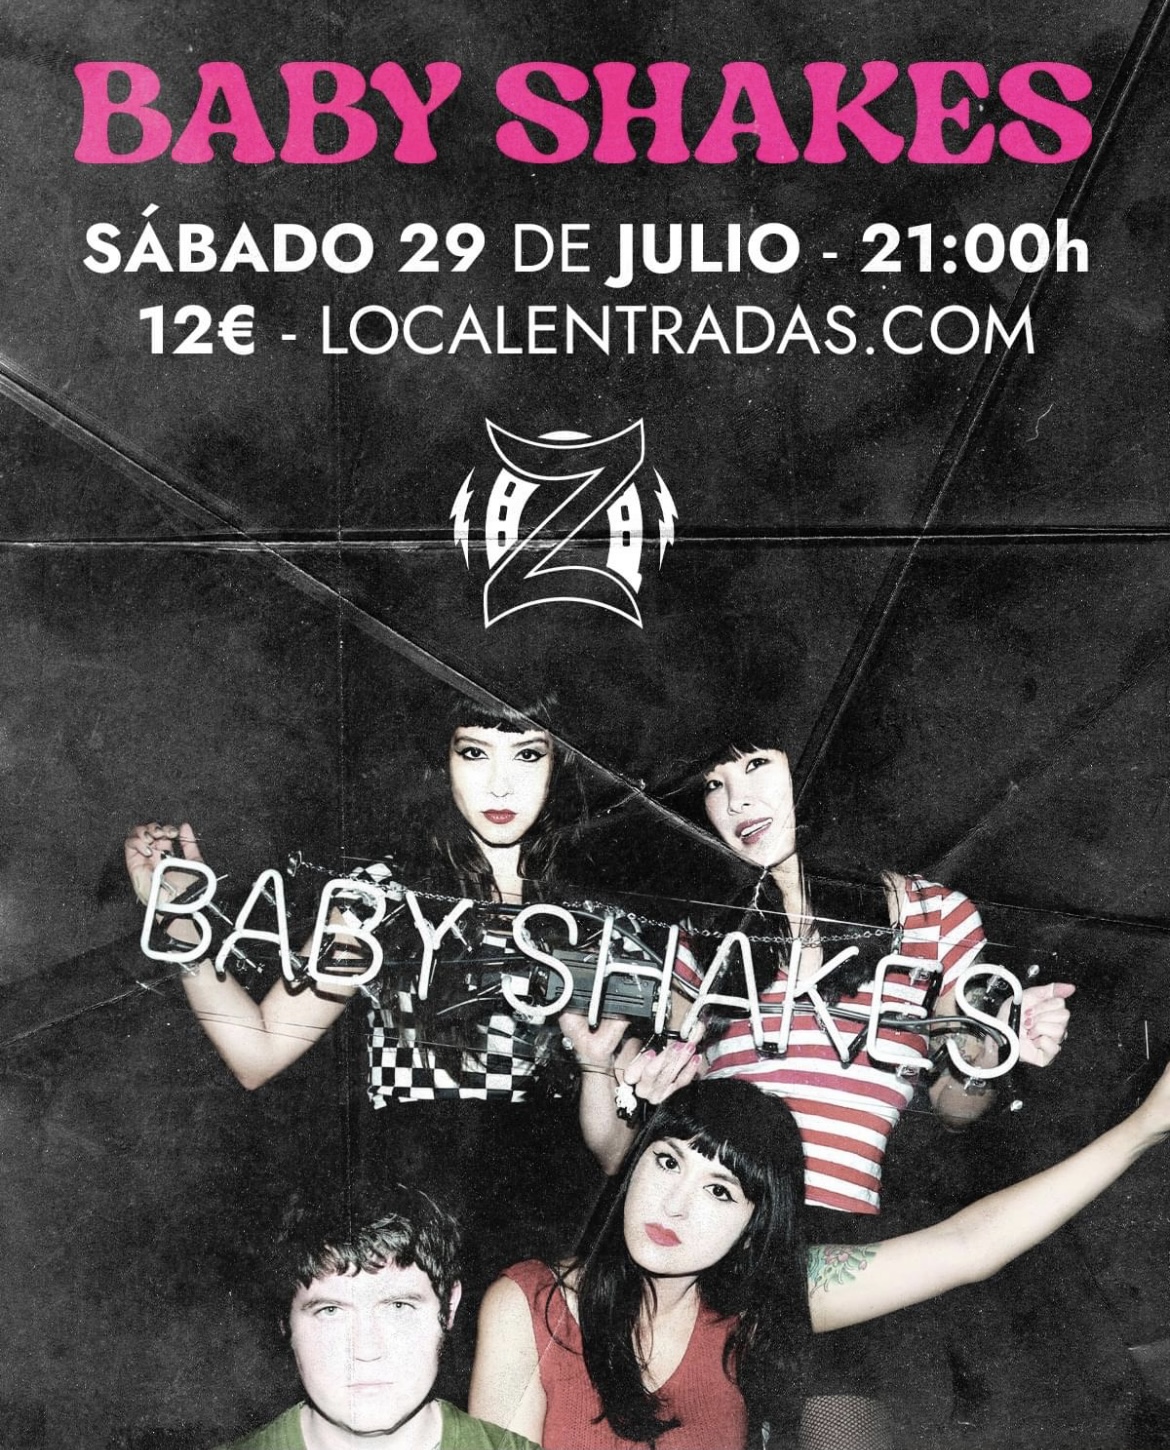 Baby shakes regresan a Zaragoza este Sábado 29 de Julio